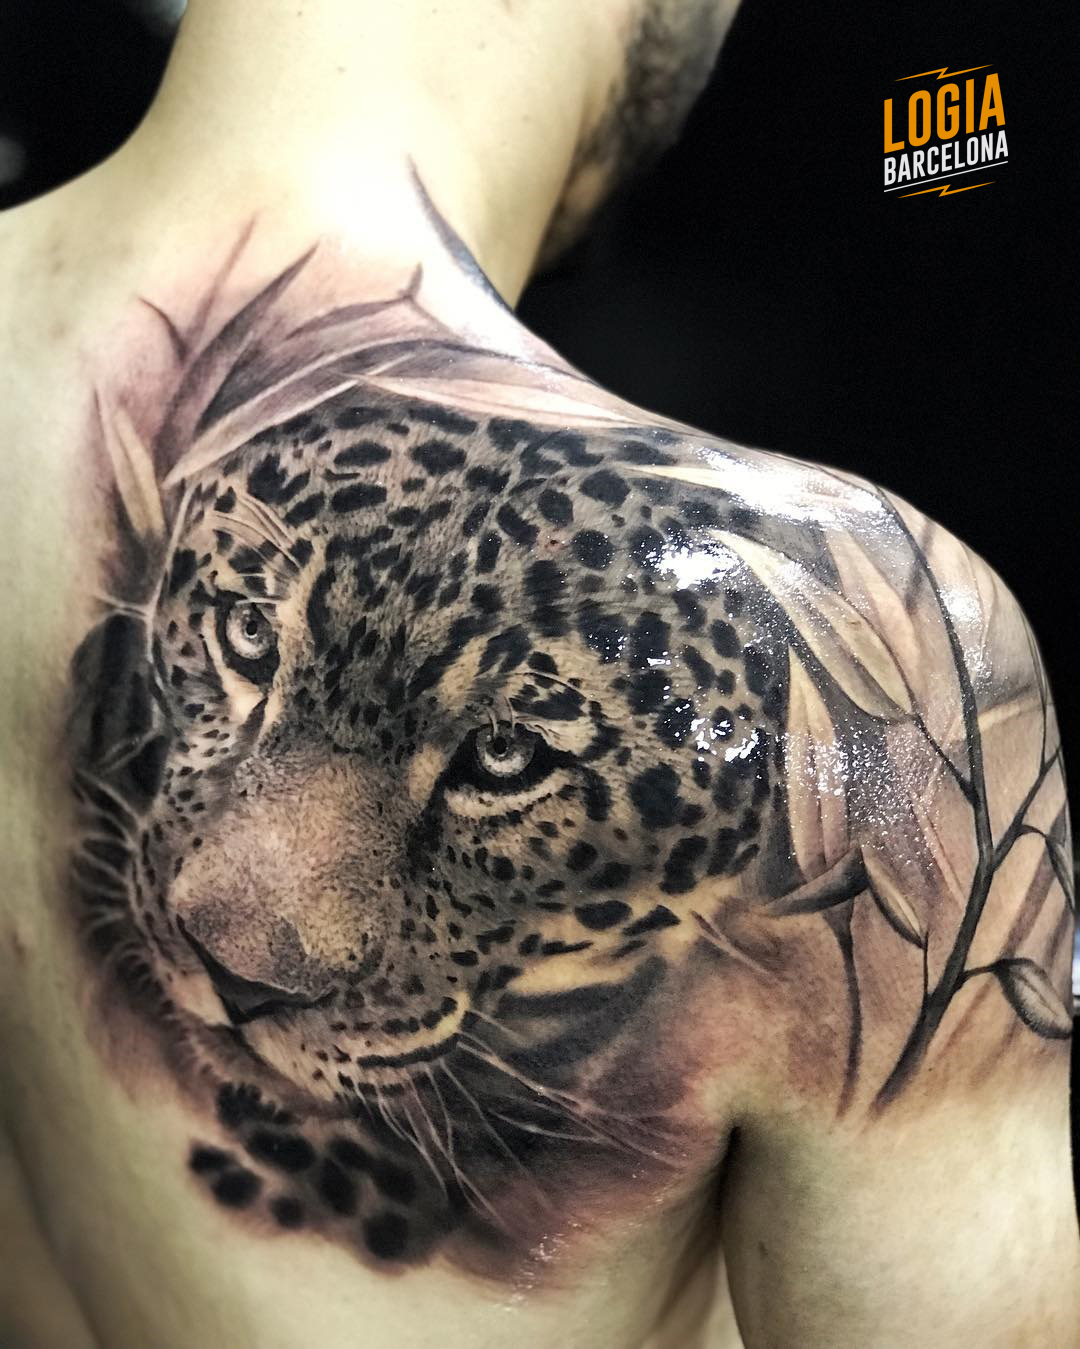 Tatuaje jaguar Azteca realista Eduar Cardona Logia Barcelona